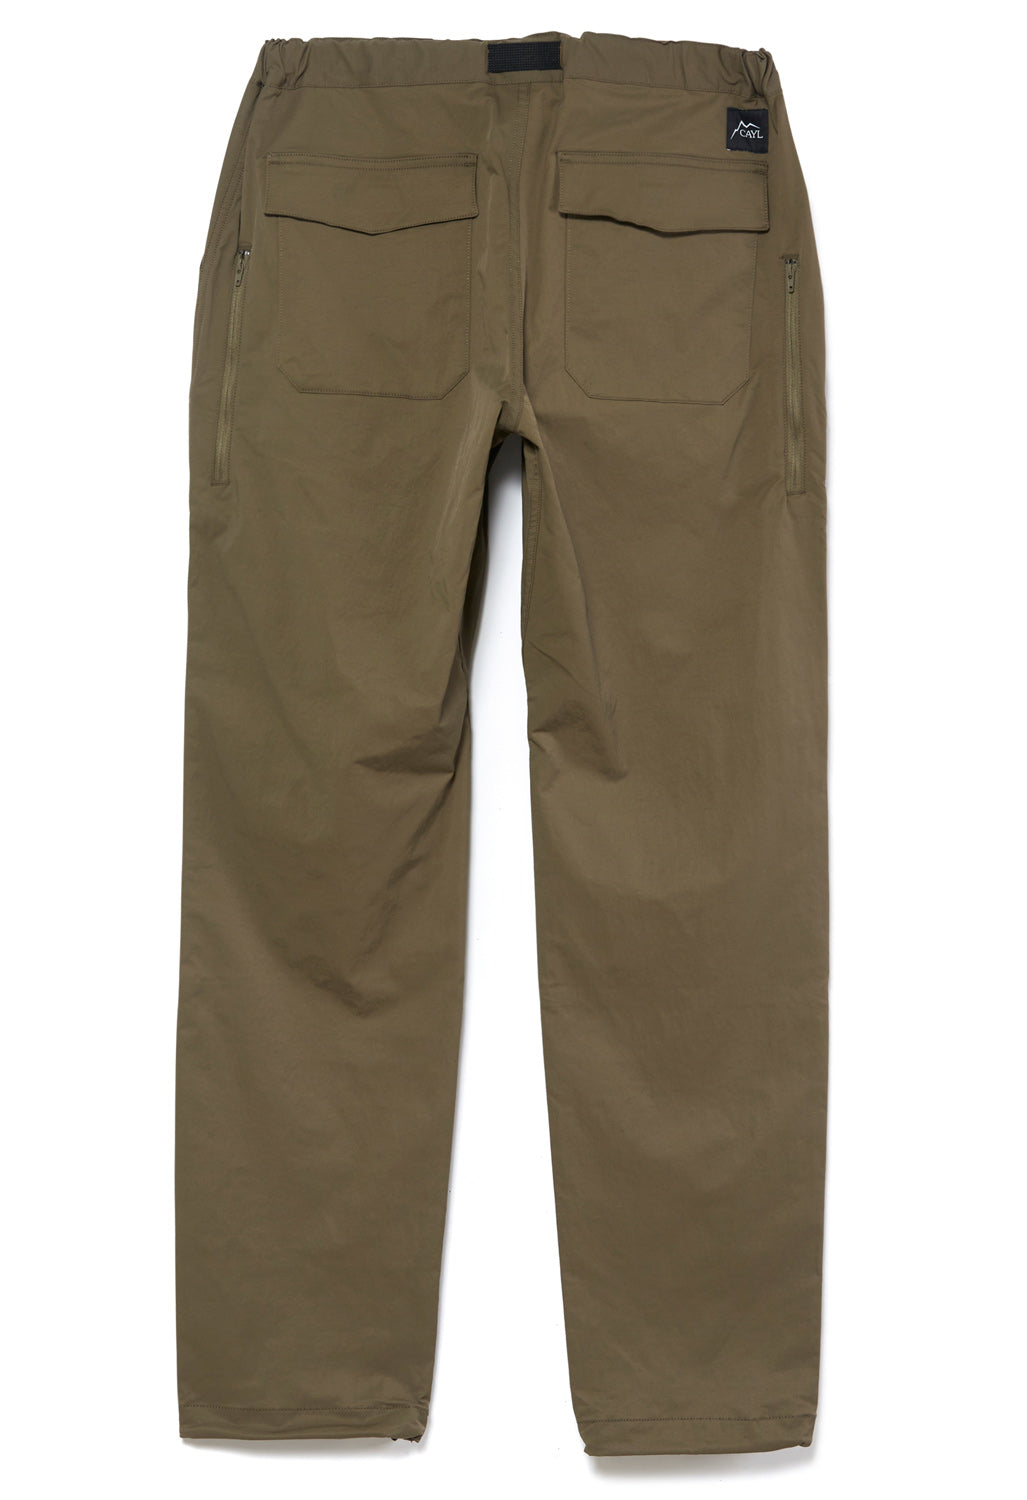 CAYL Men's Mountain Pants 2 - Brown Khaki